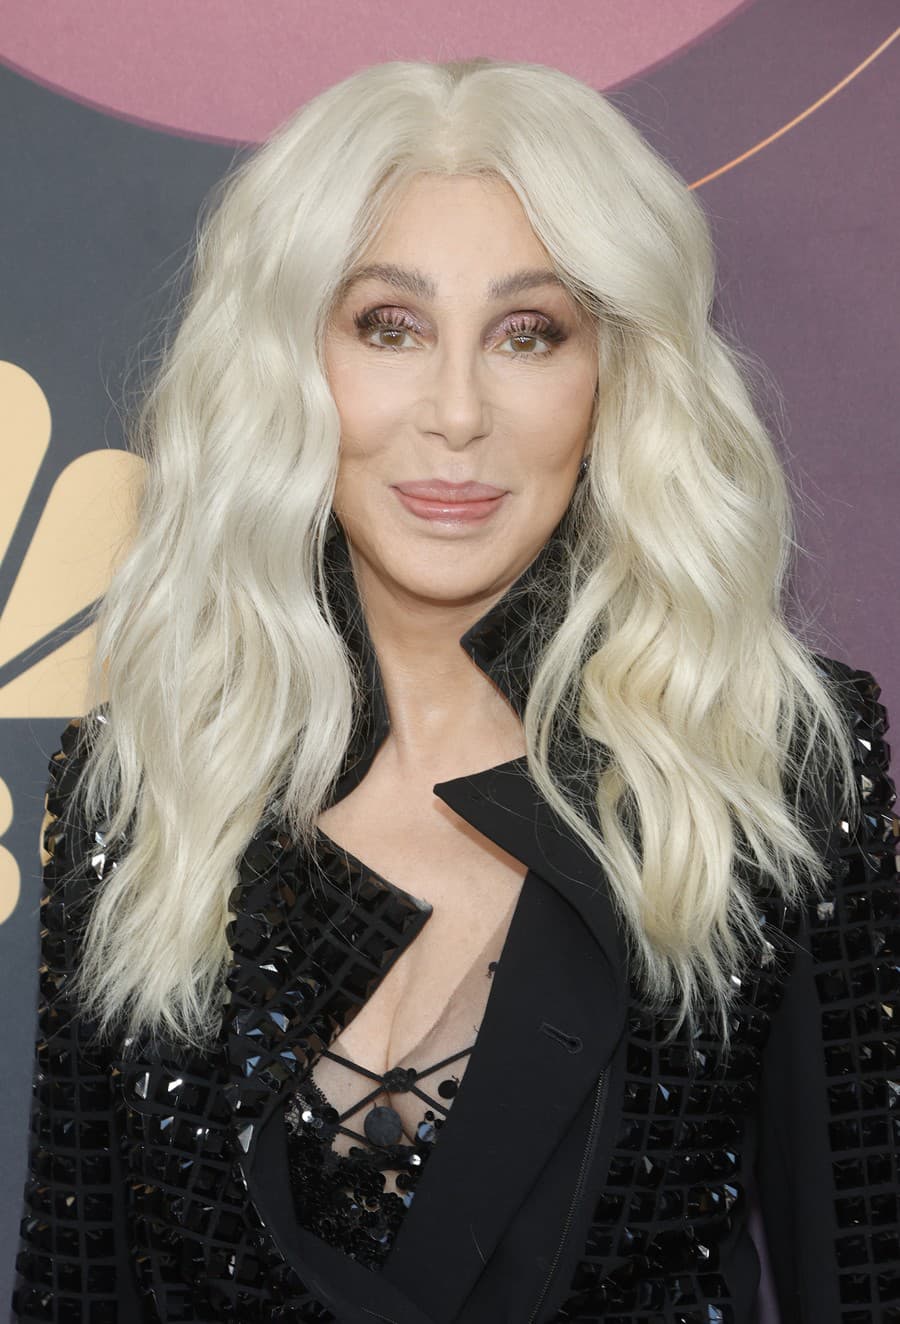 Cher vyzerá aj v 77 rokoch plná energie, elánu a šťastná.